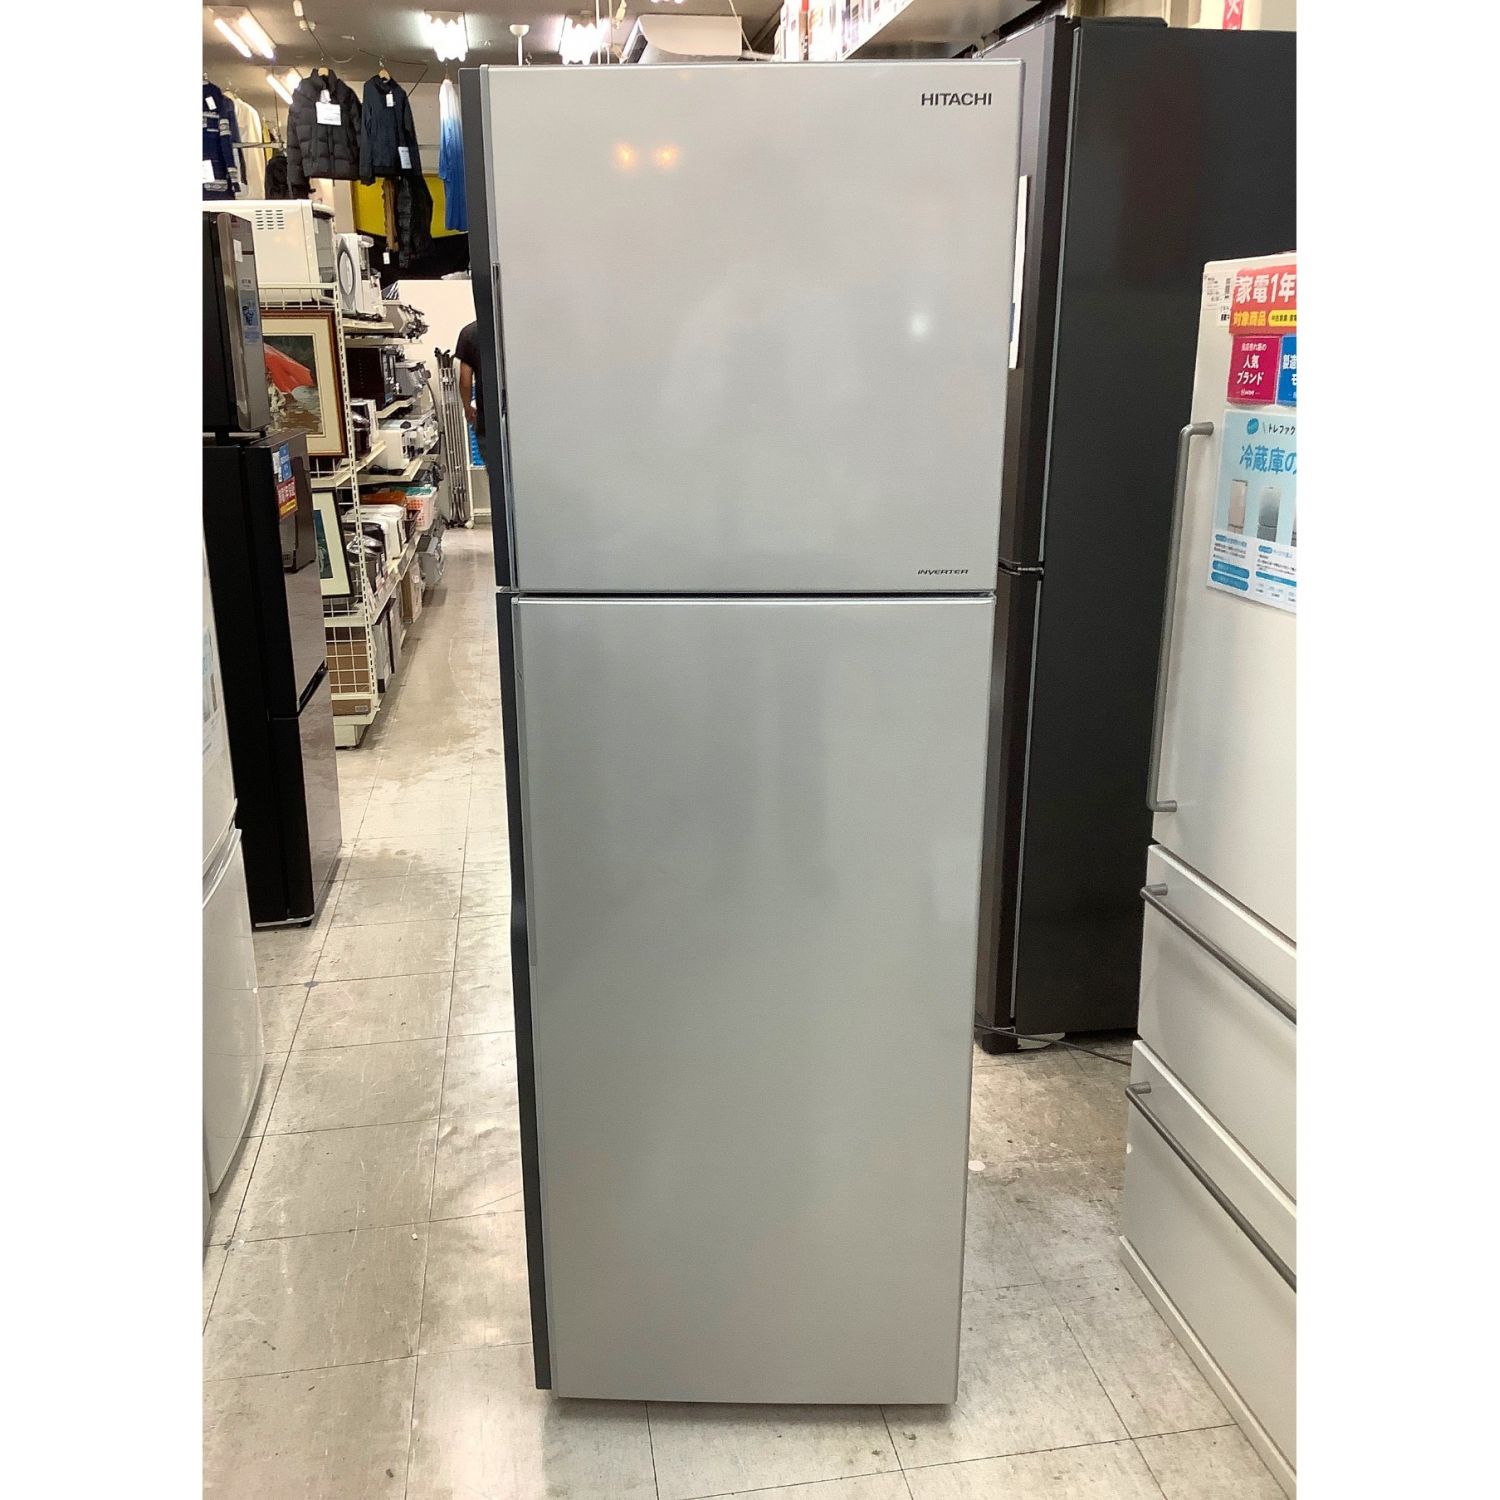 新品同様 冷蔵庫 HITACHI 2ドア冷凍冷蔵庫 80L R-8ST 冷蔵庫・冷凍庫 